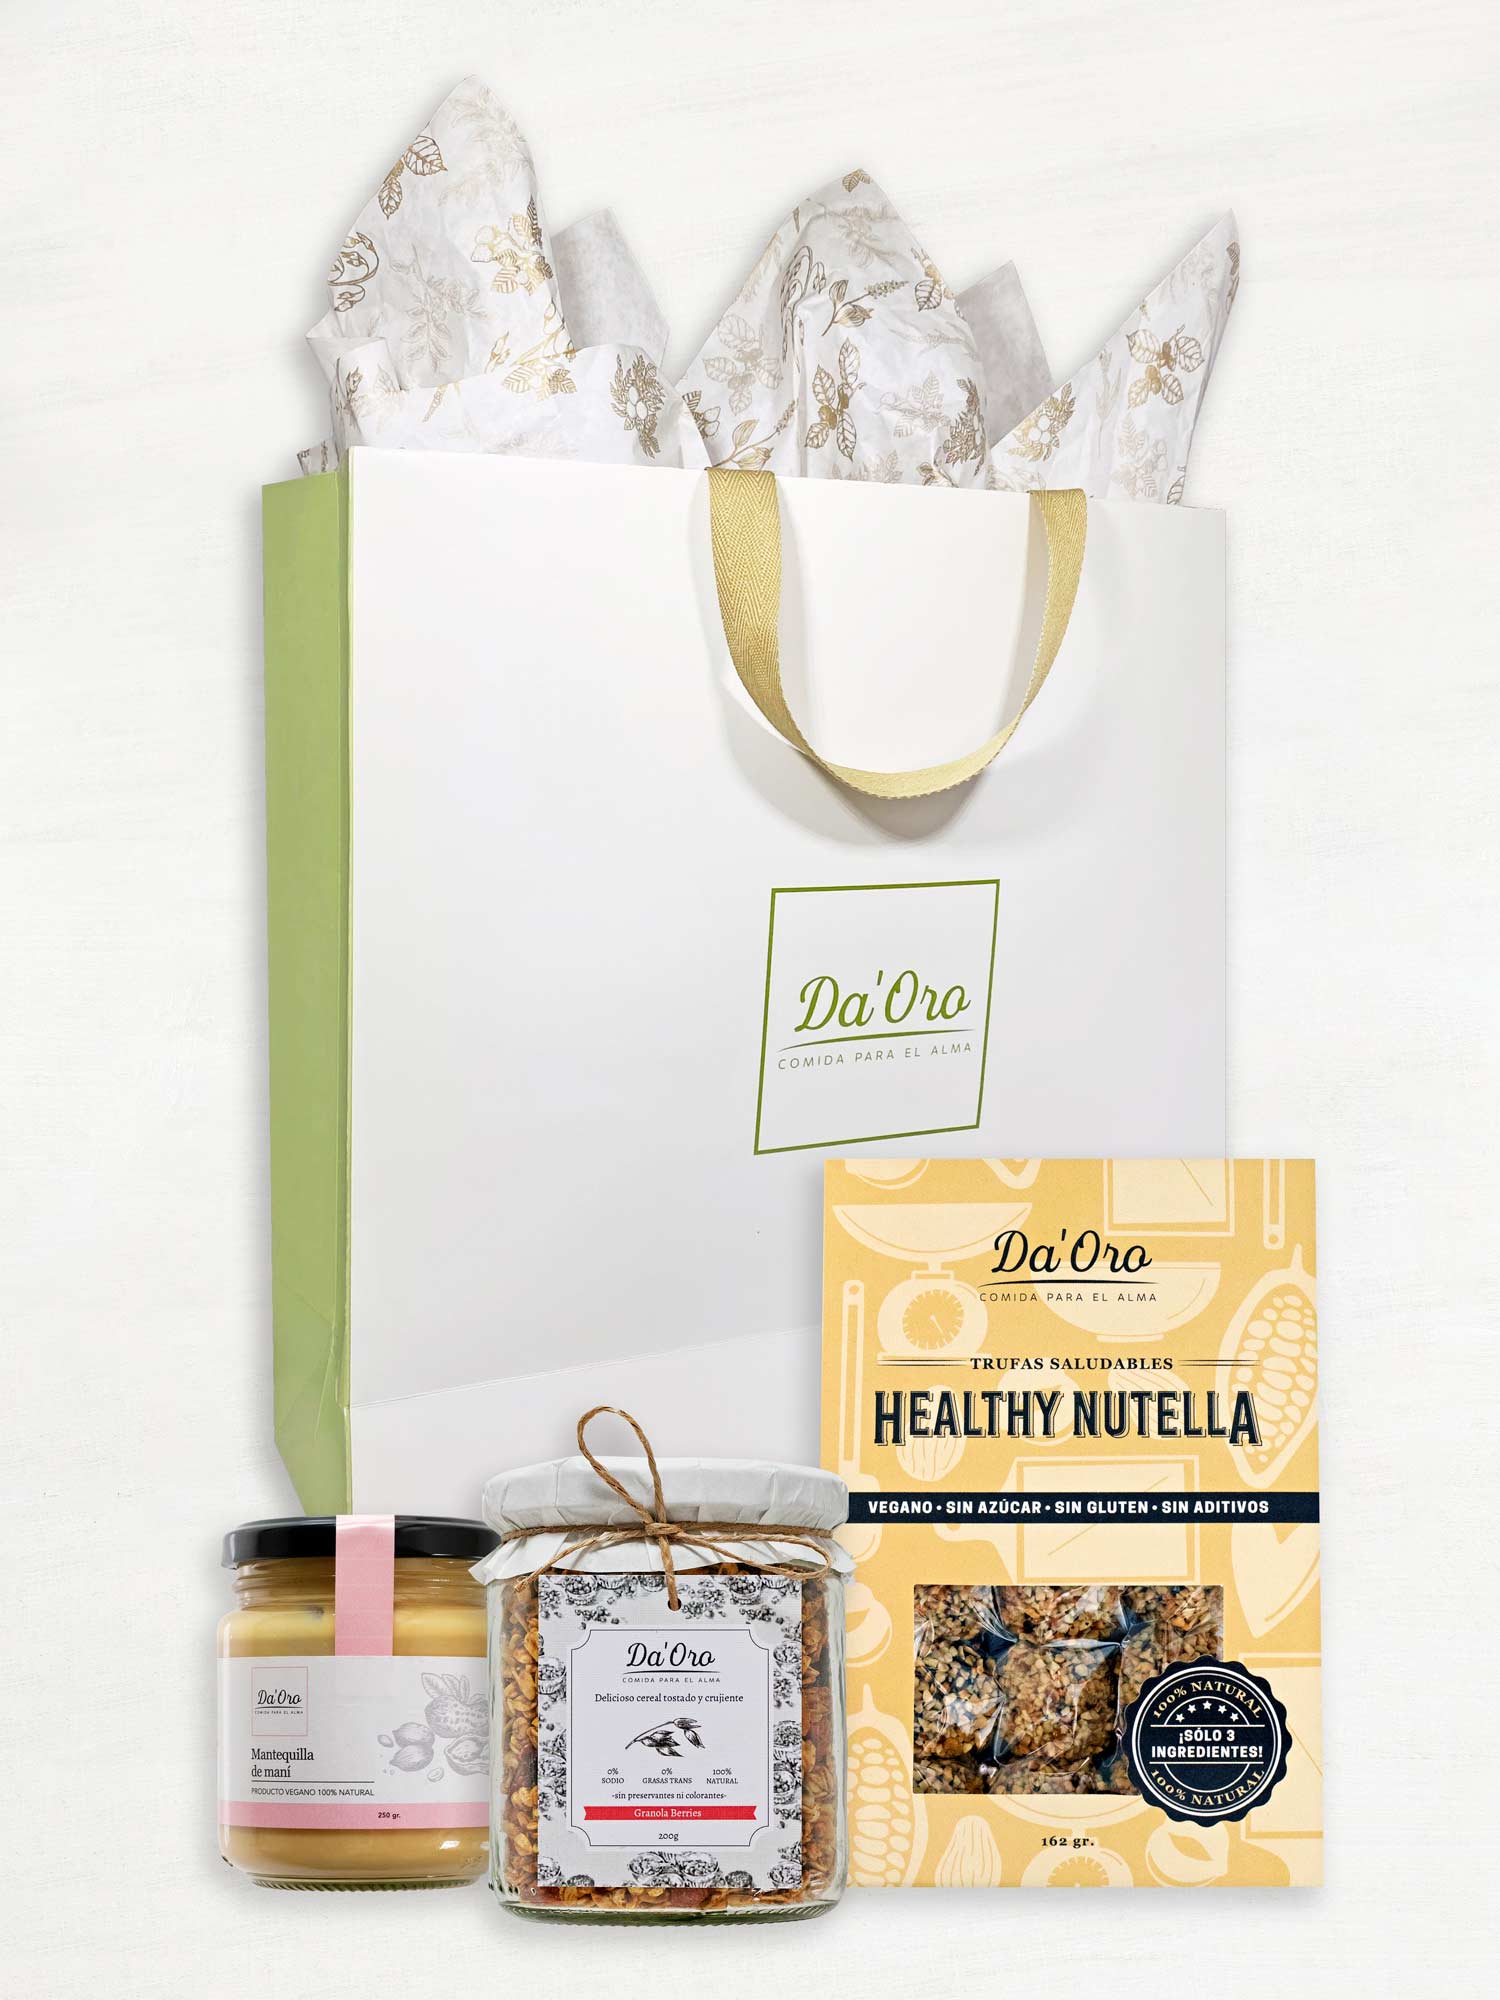 Bolsa de regalo marca Da'Oro con frasco de mantequilla de maní, frasco de granola y caja de trufas healthy nutella